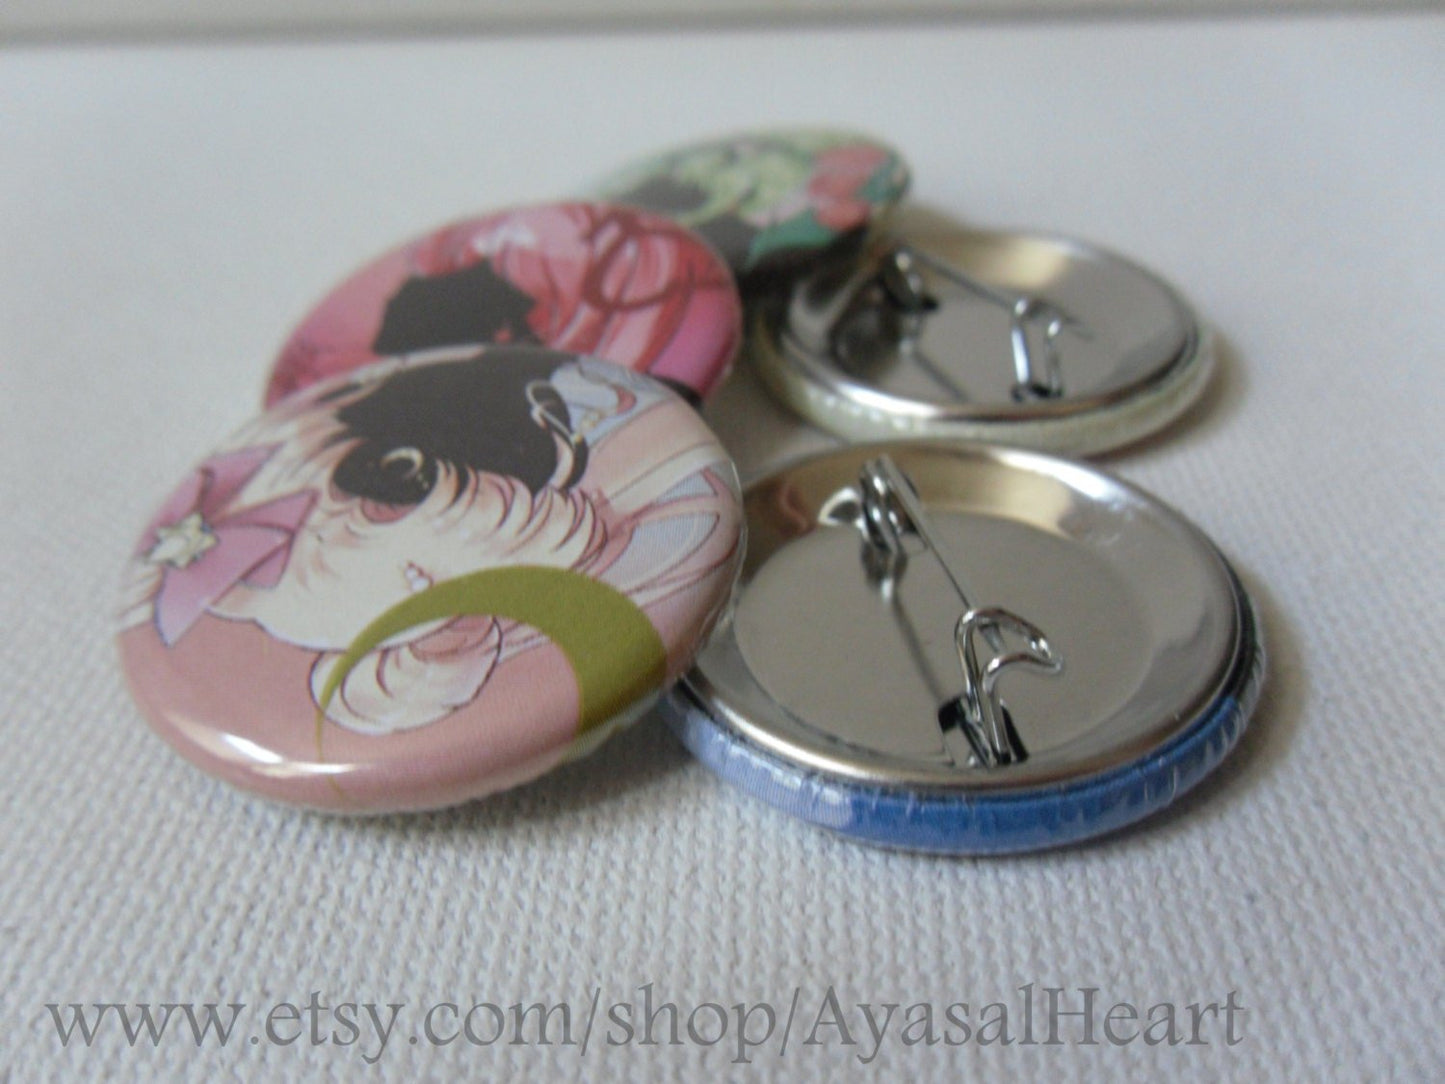 Sailor Moon - Sailor Senshi Buttons set #1